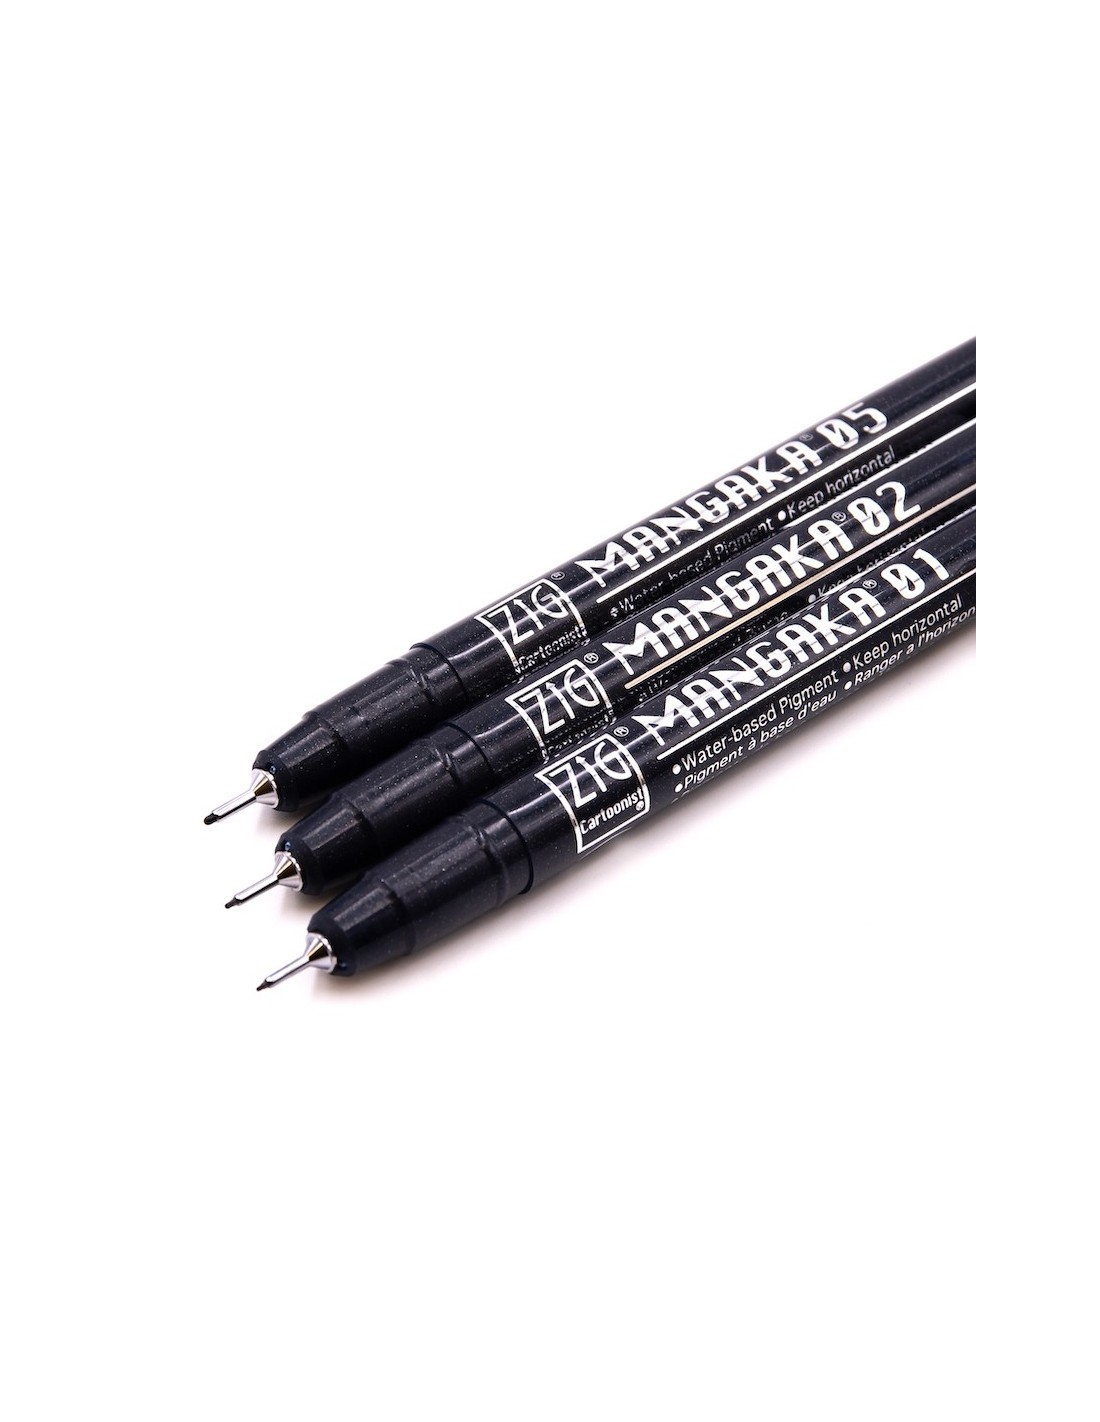 Kuretake Japanese Manga Pen Black - pack of 3 pens with tips of various  sizes